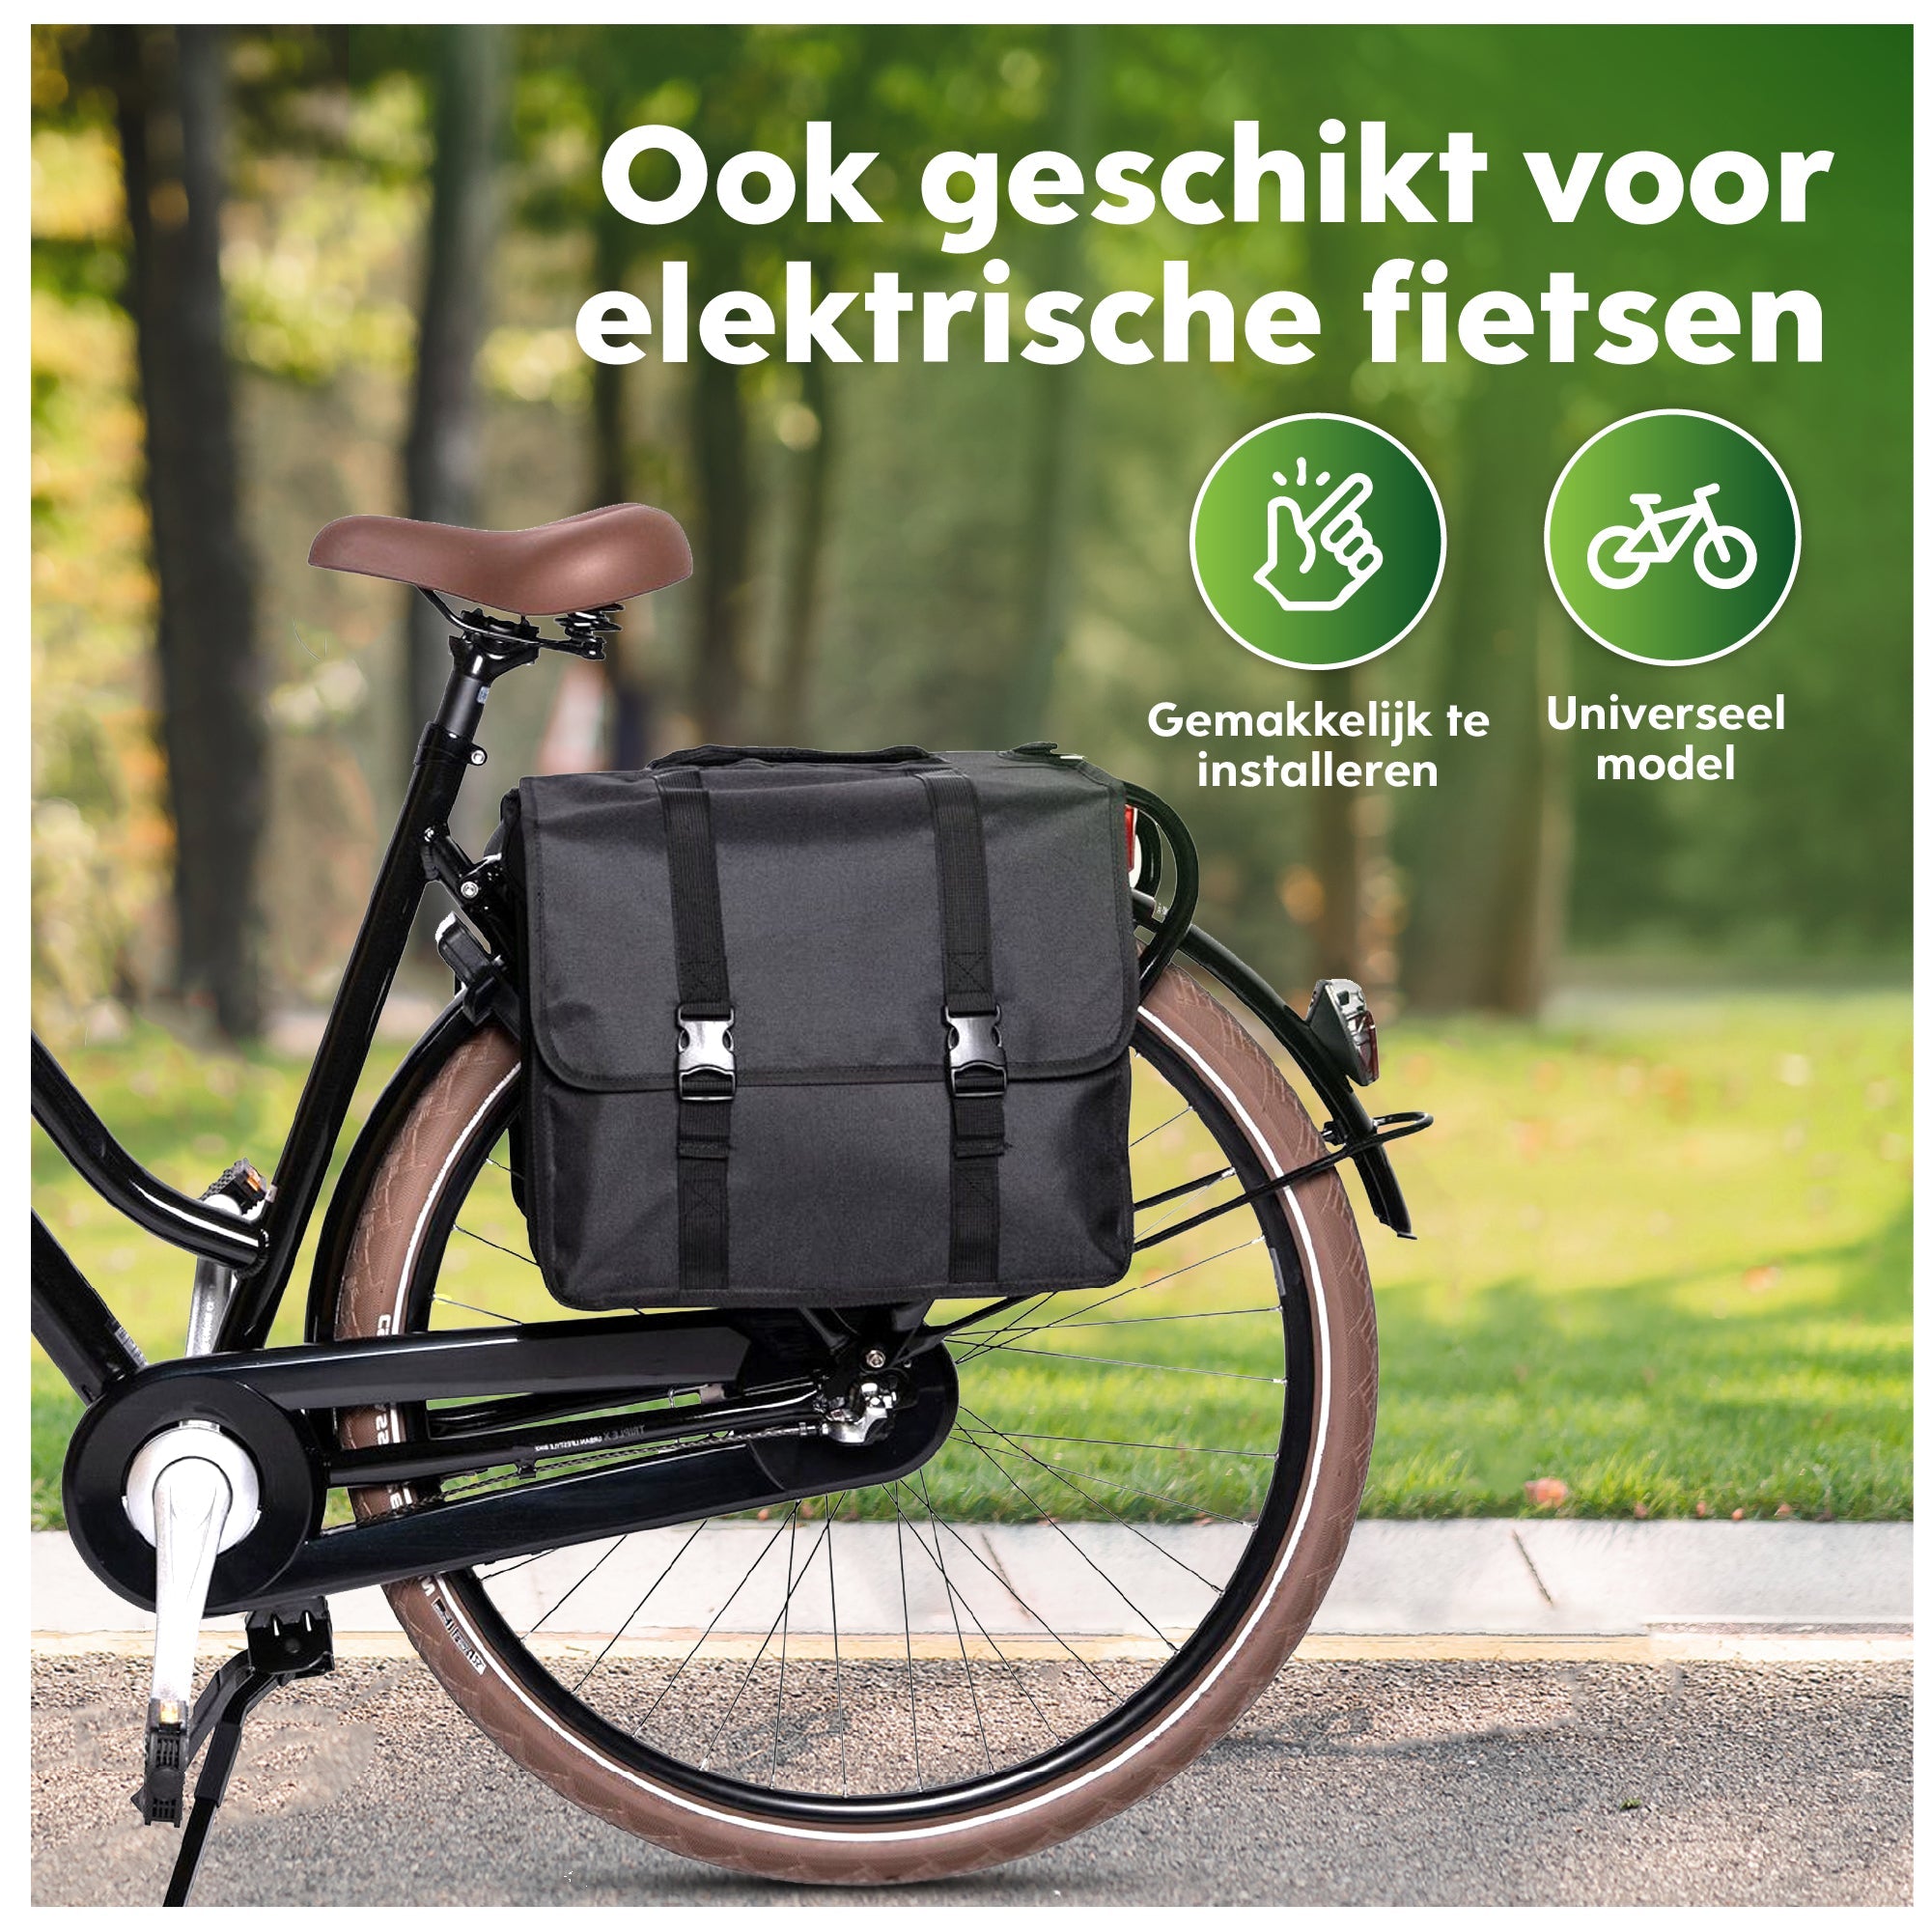 dubbele fietstas - waterafstotend - zwart - 46L - ekostar